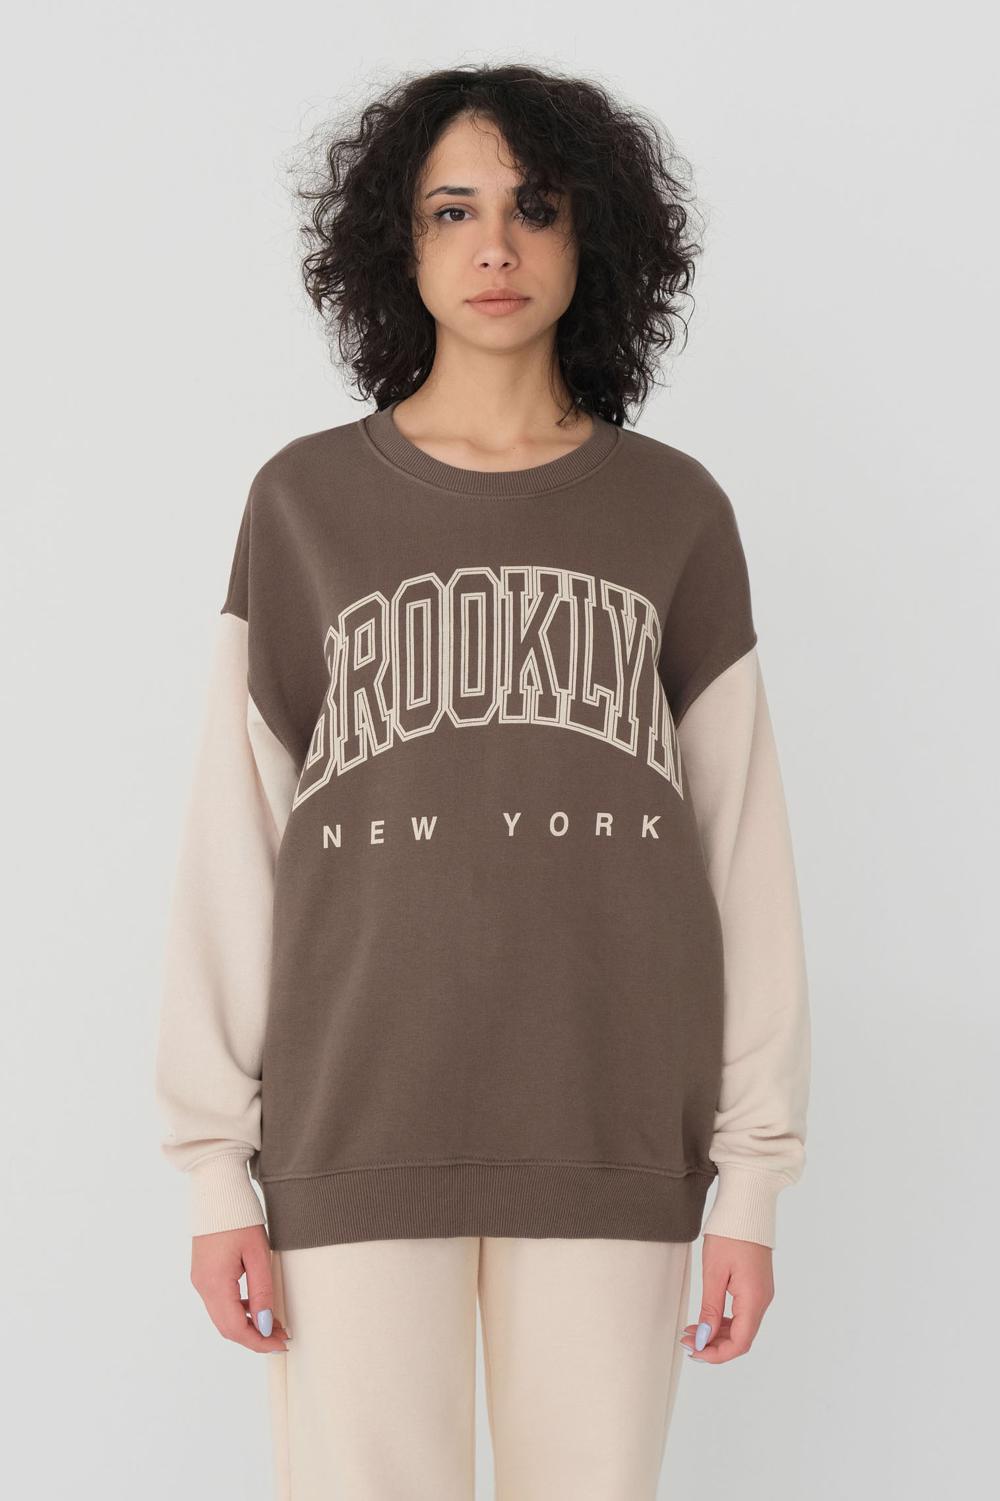 Addax Brooklyn New York Baskılı Sweatshirt. 2